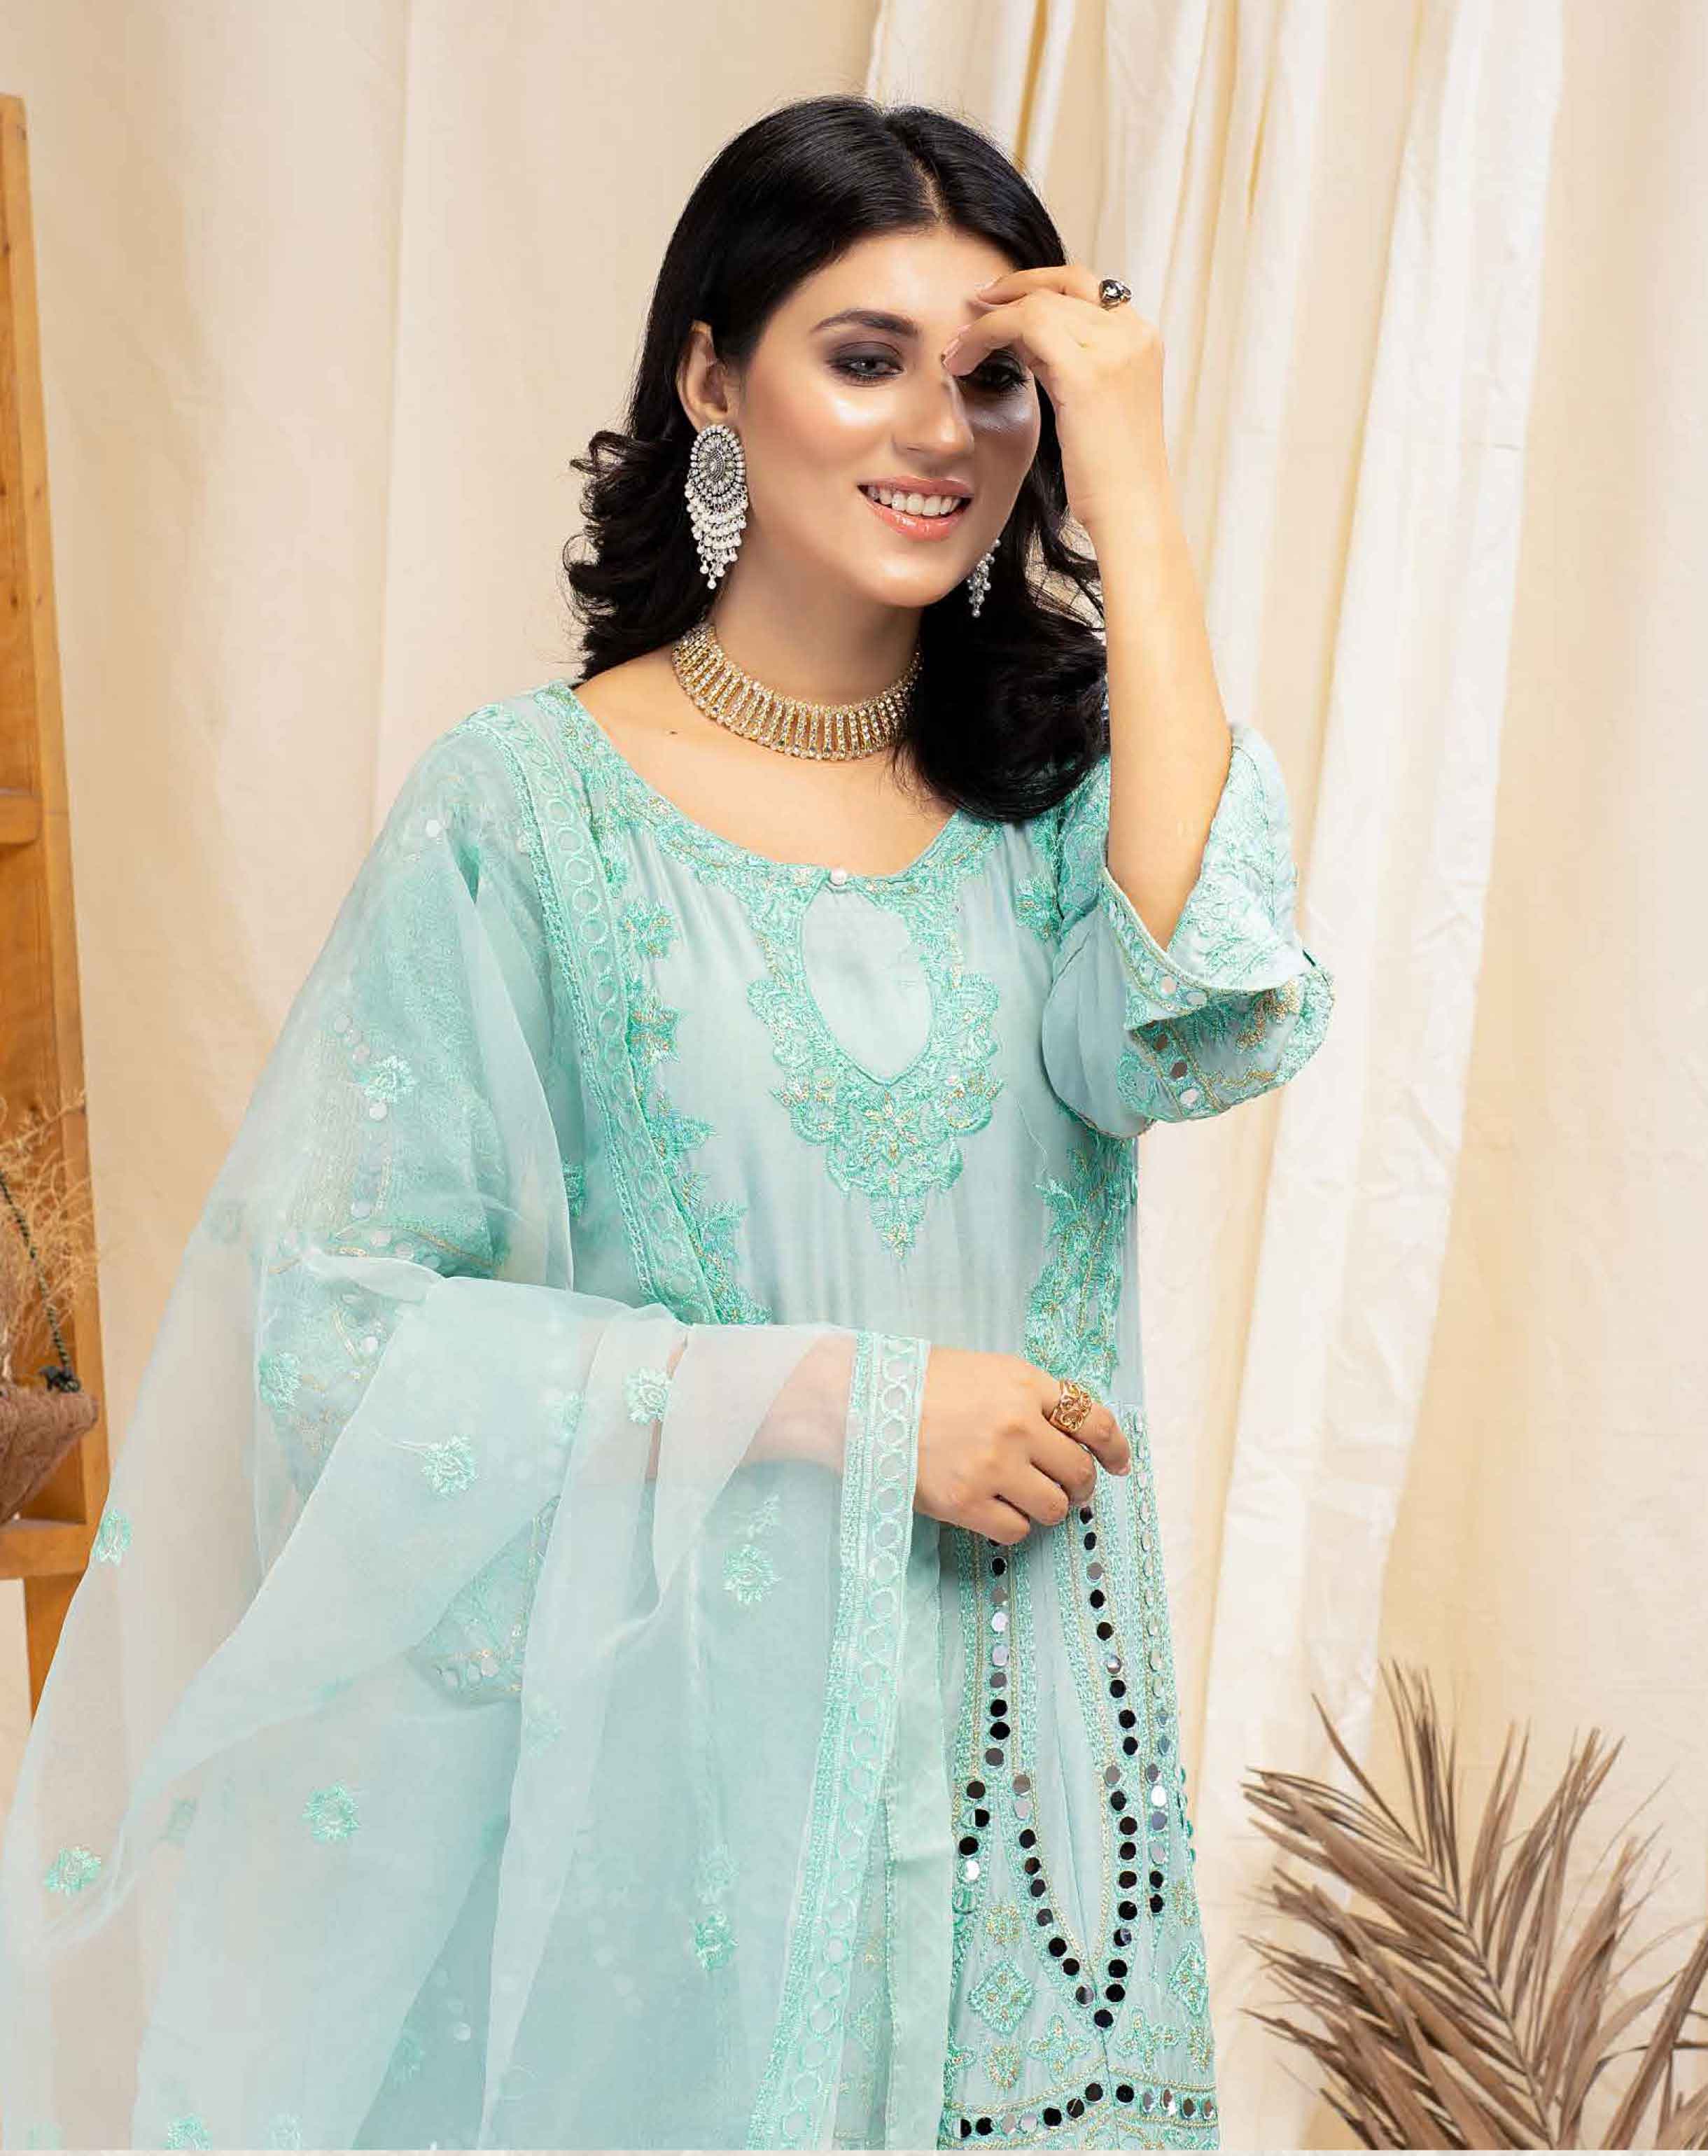 pakistani wedding outfit